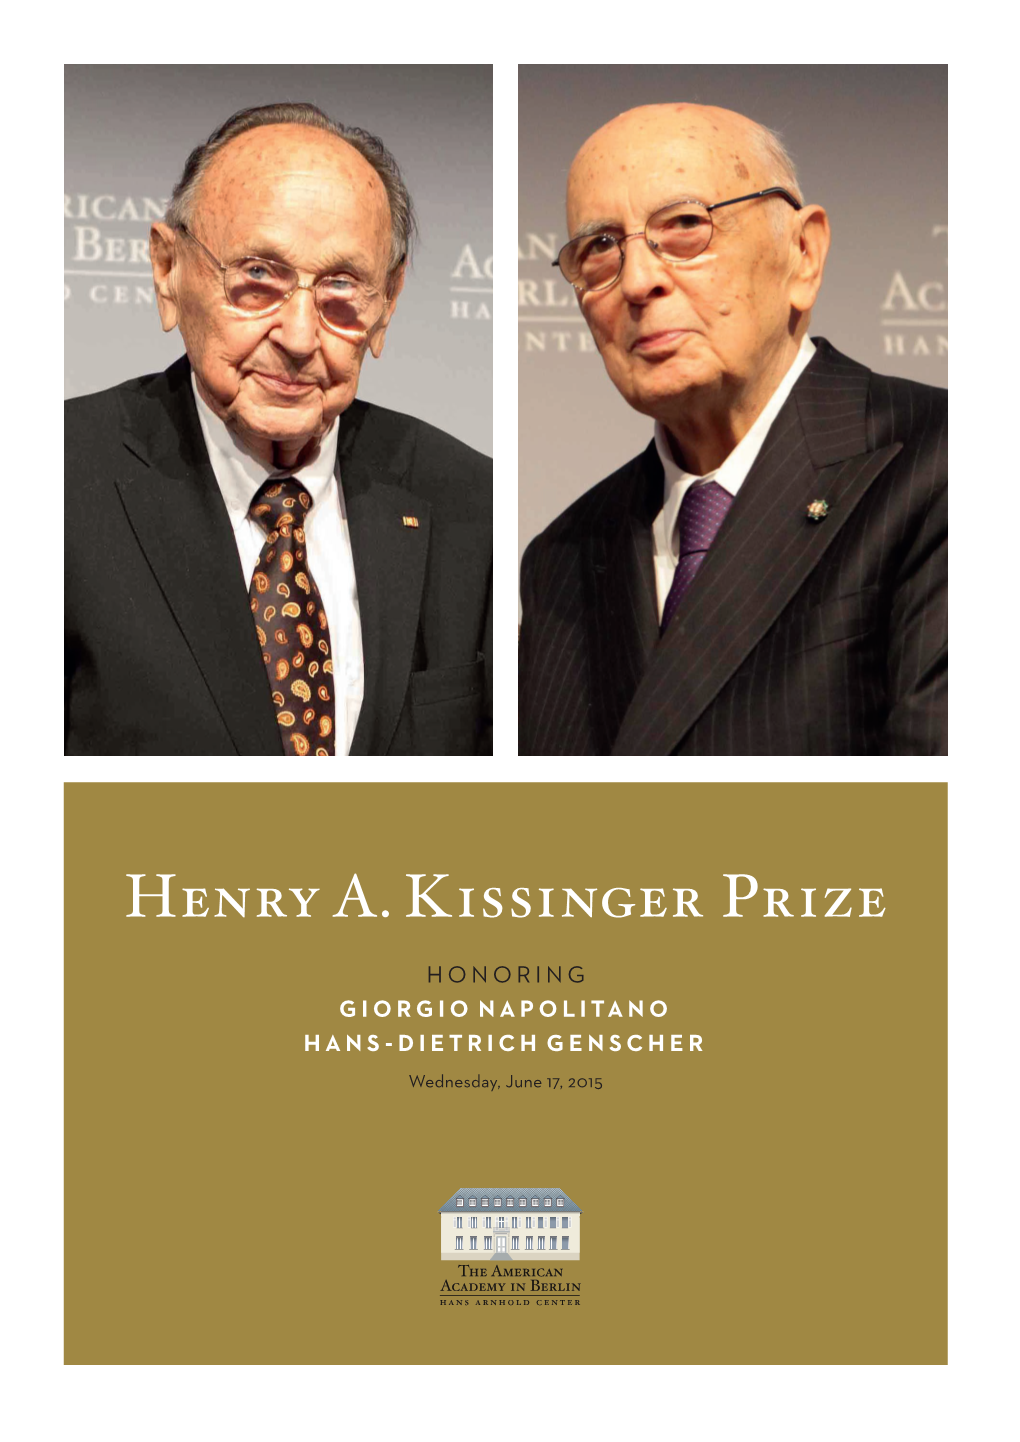 Henry A. Kissinger Prize